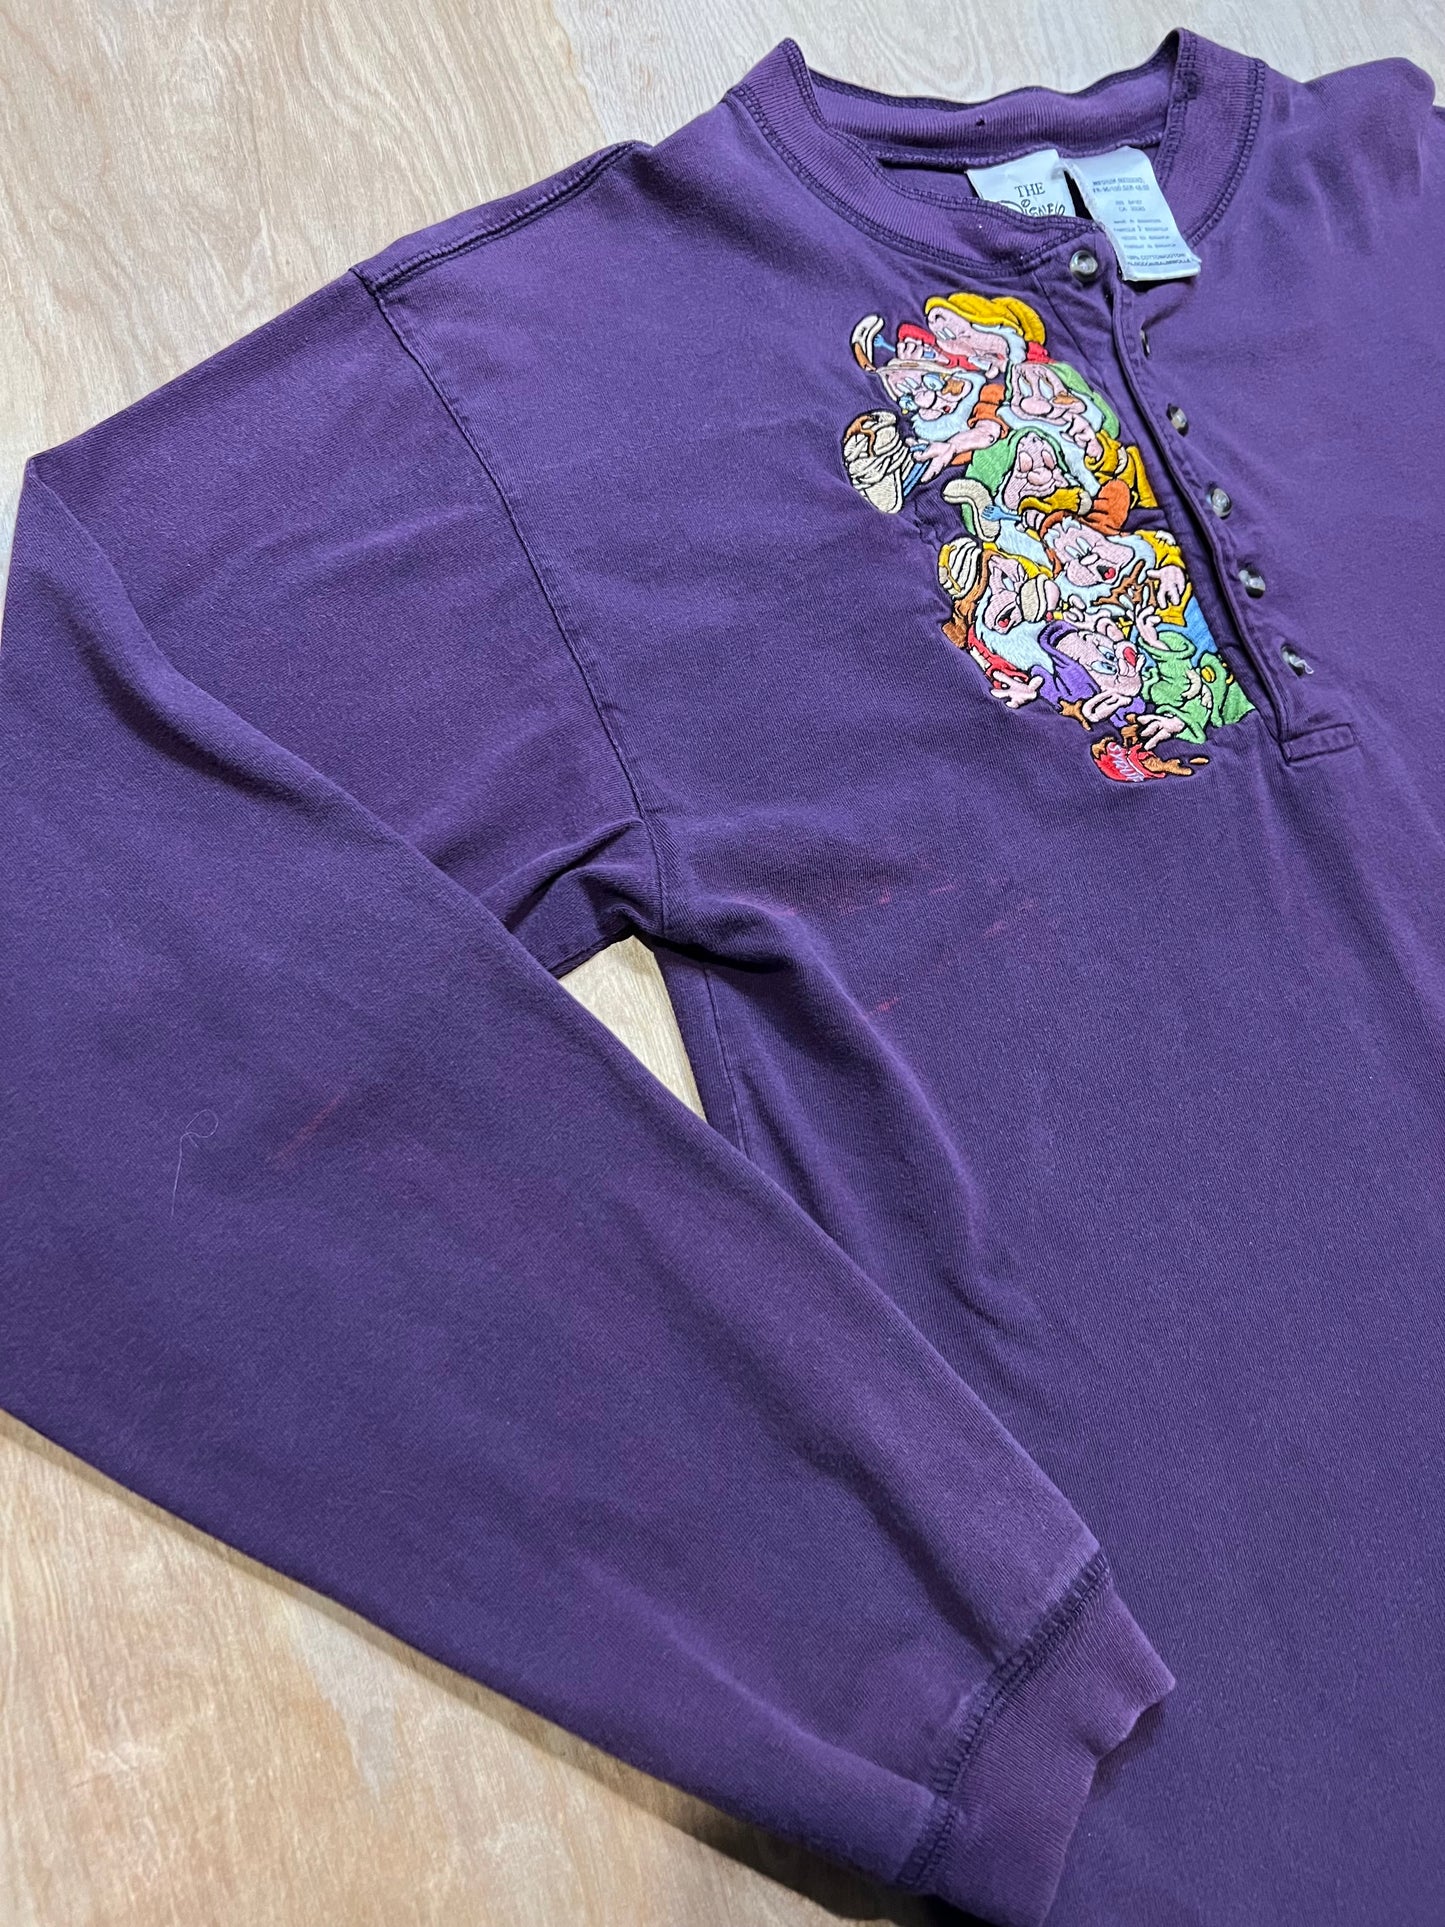 Vintage Disney Seven Dwarves Long Sleeve Shirt